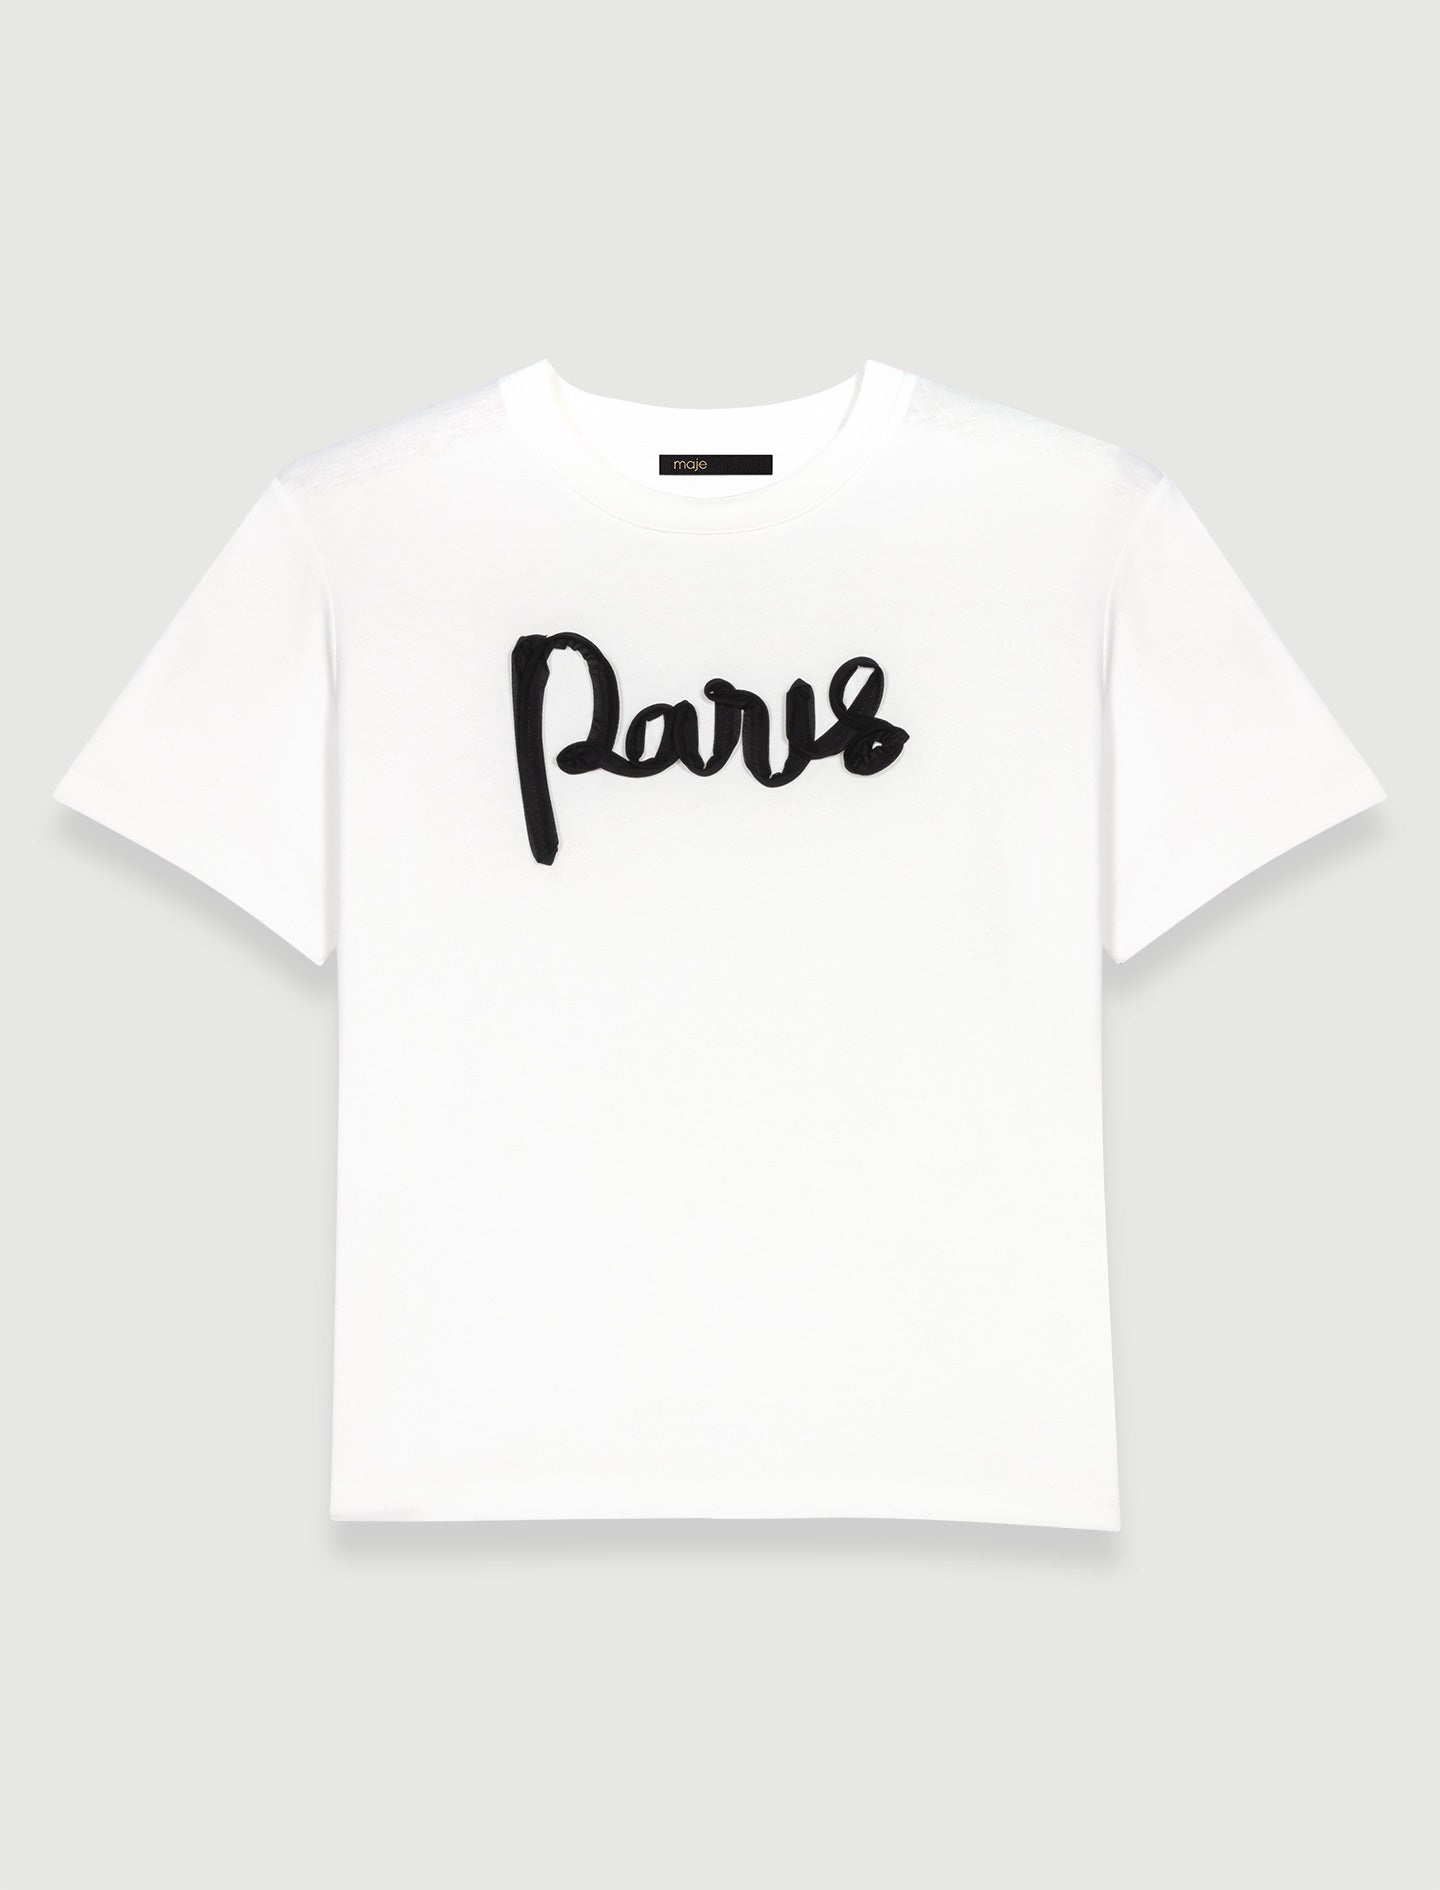 Camiseta Paris